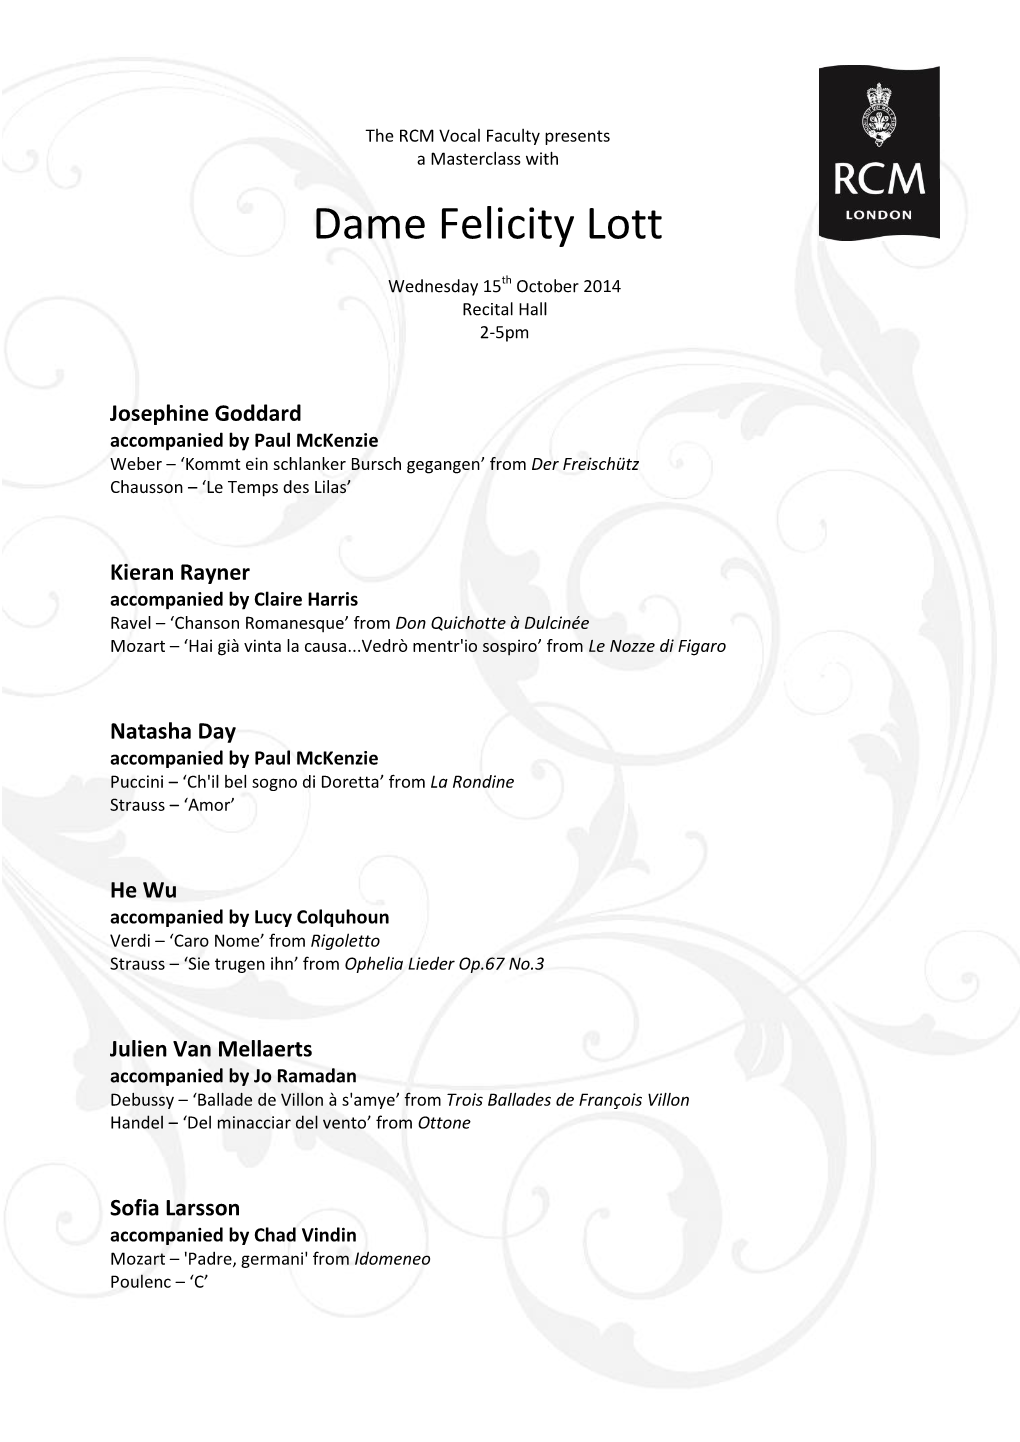 Dame Felicity Lott